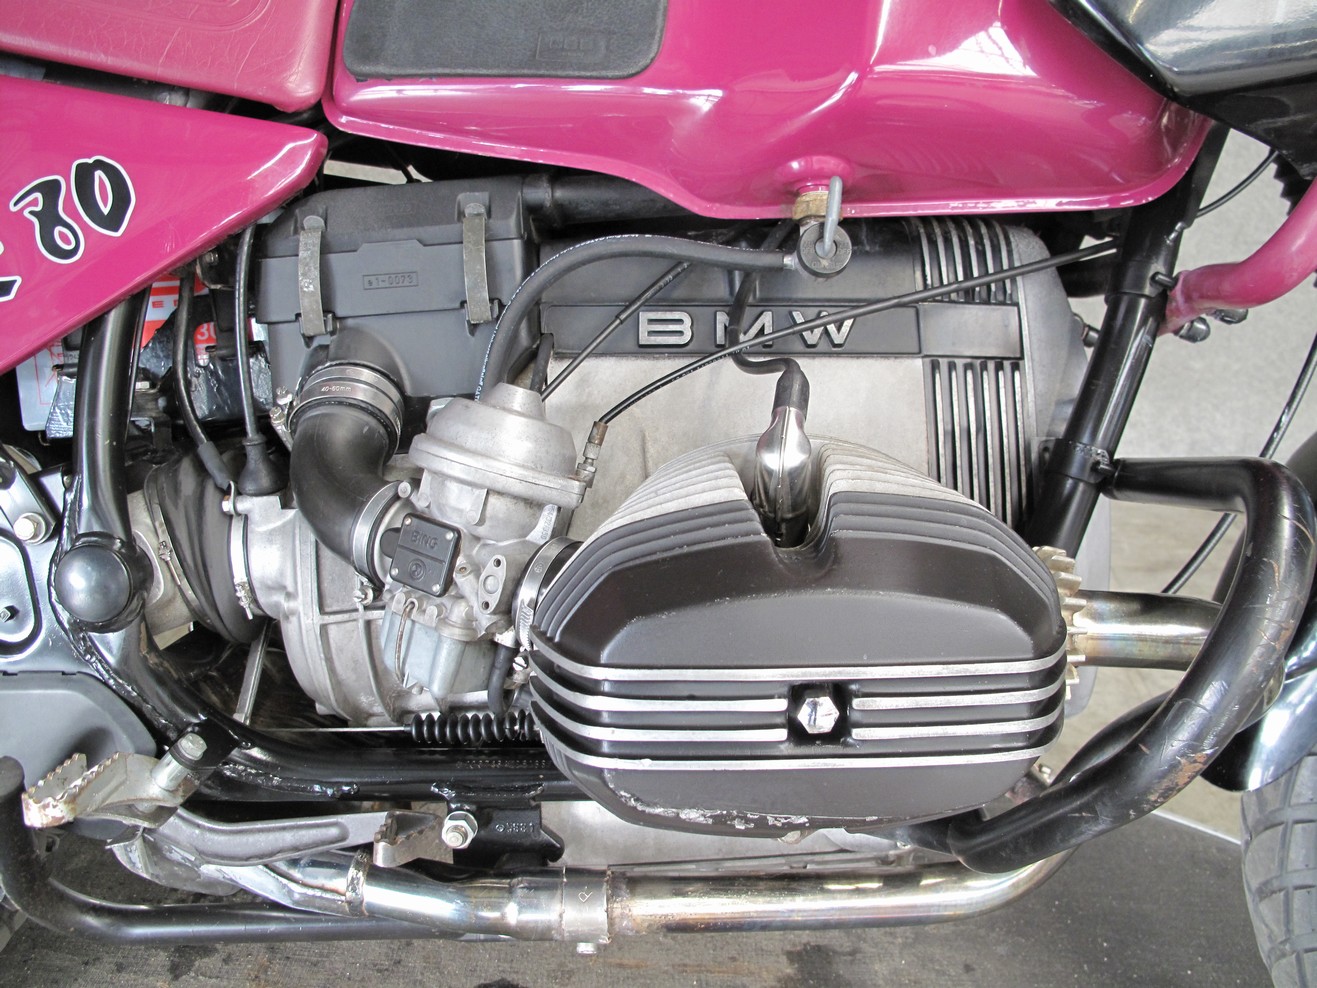 BMW - R80GS